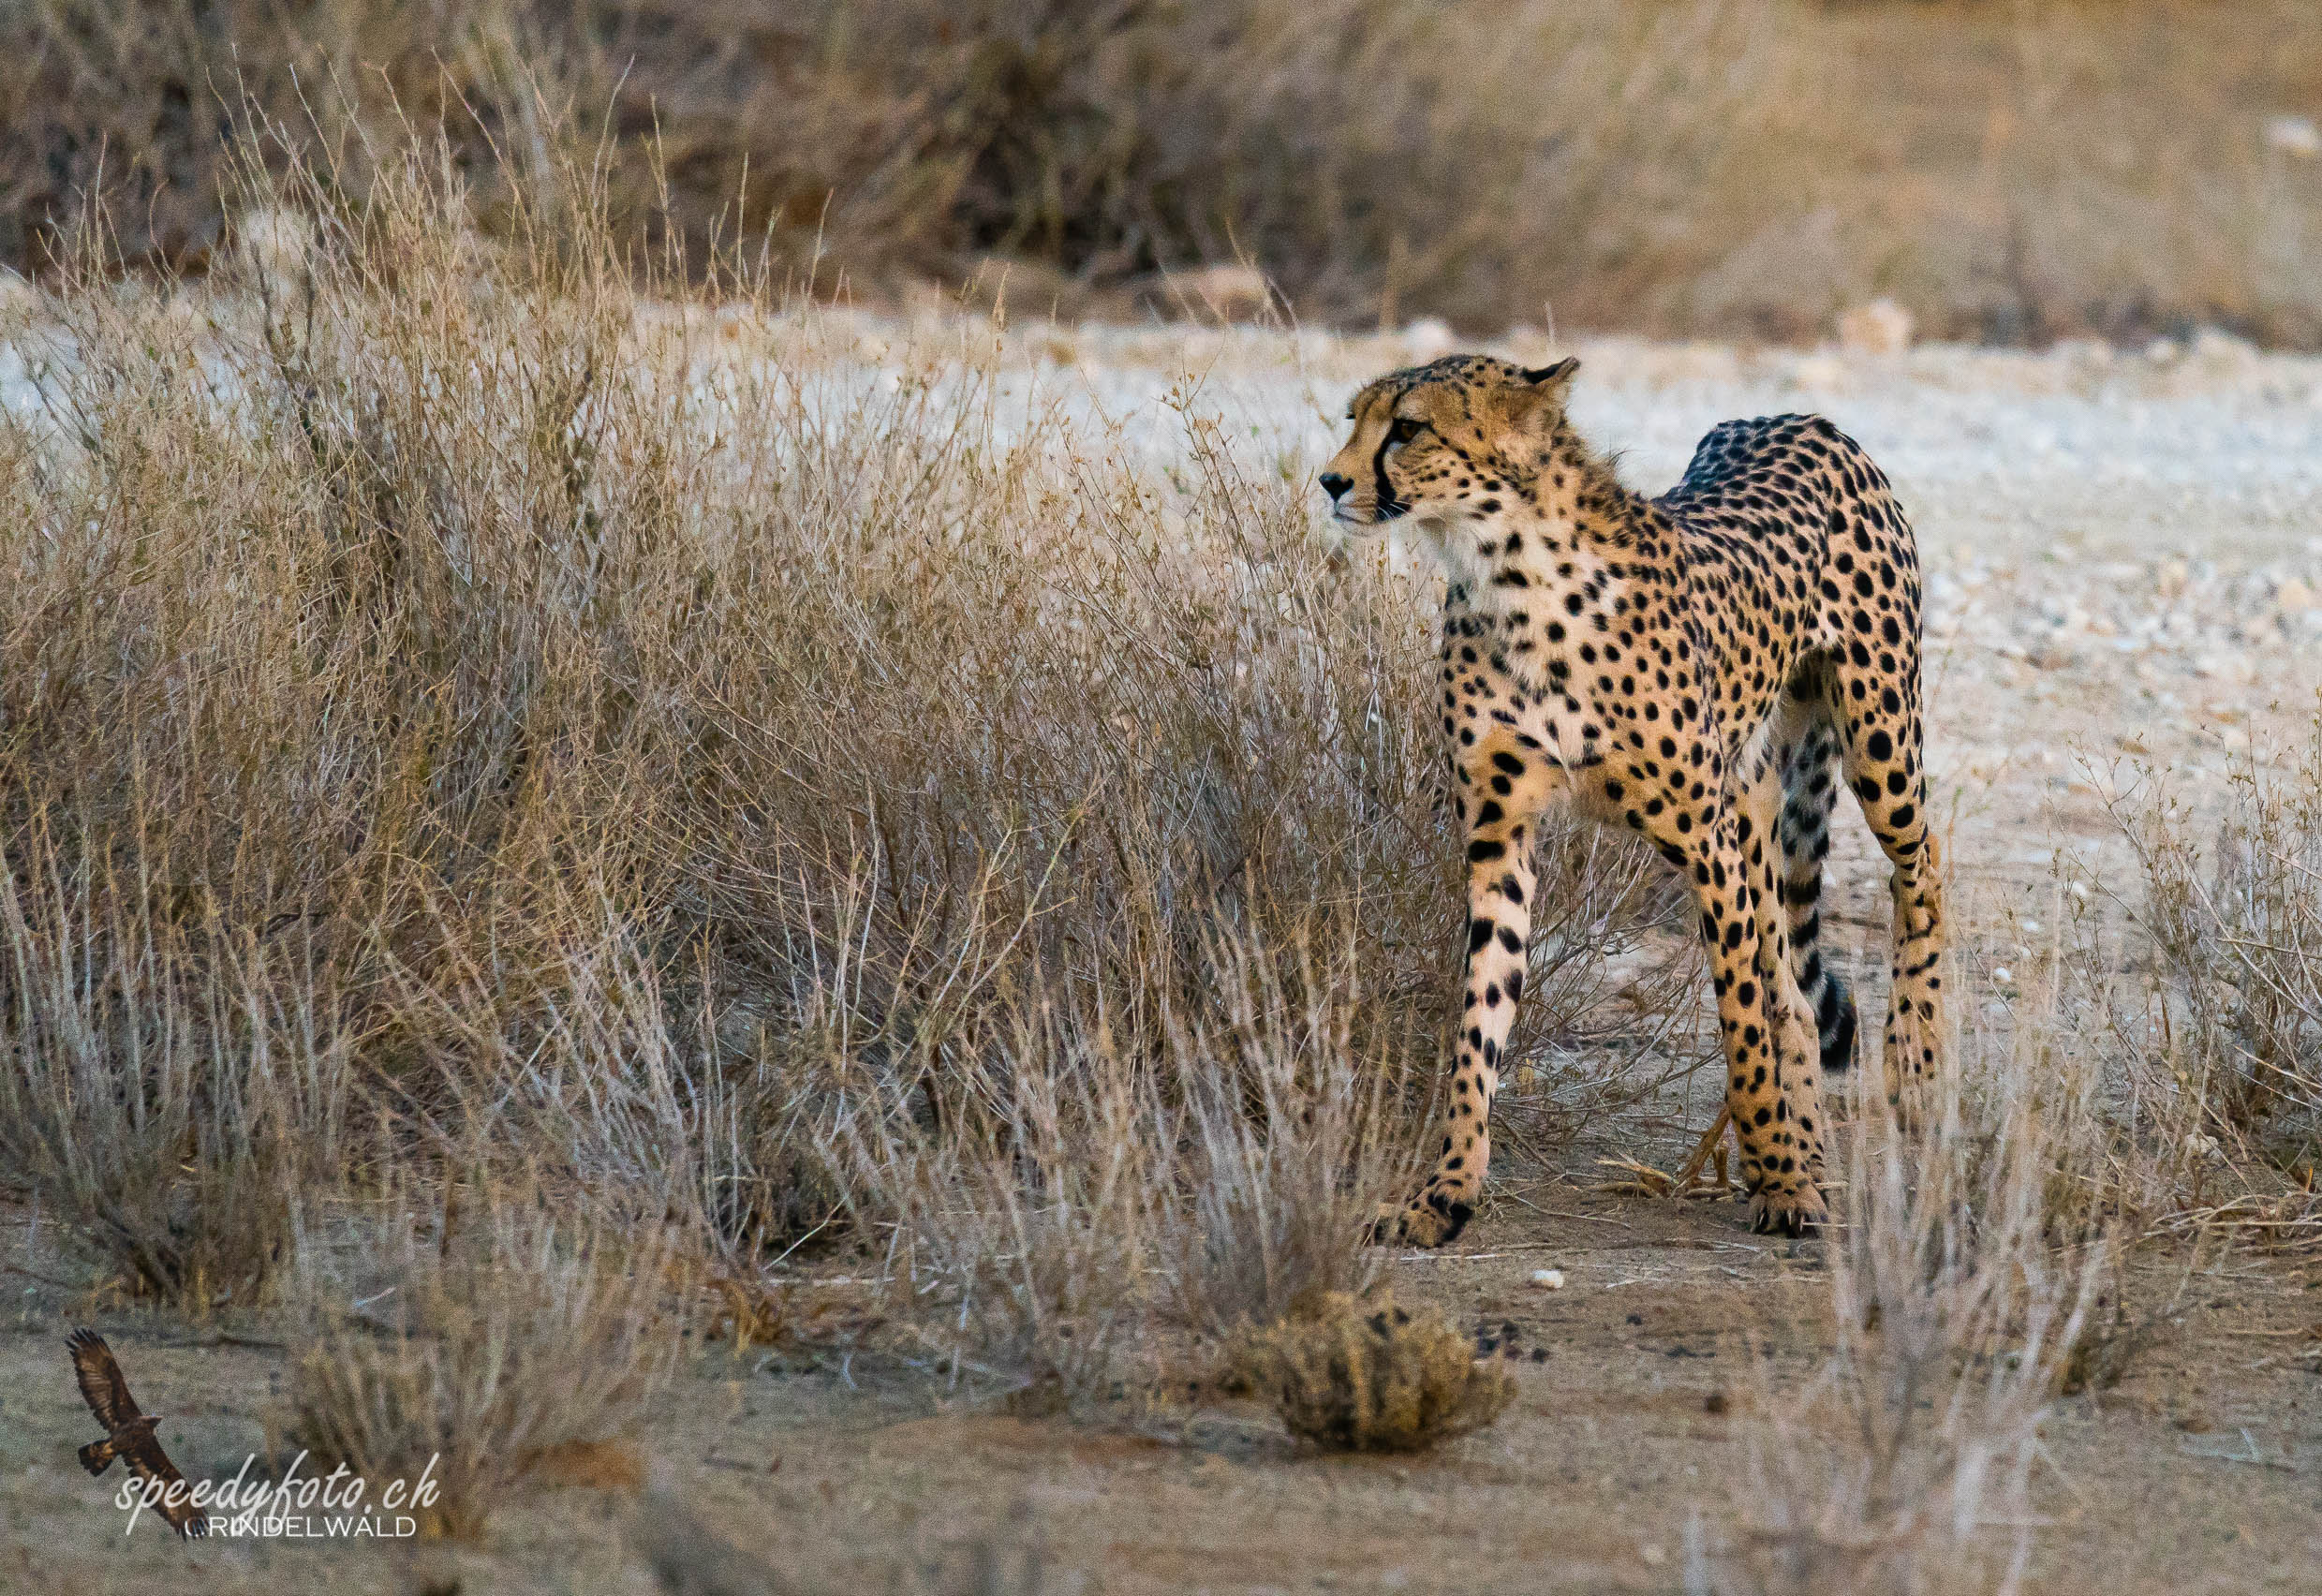 The Cheetah 